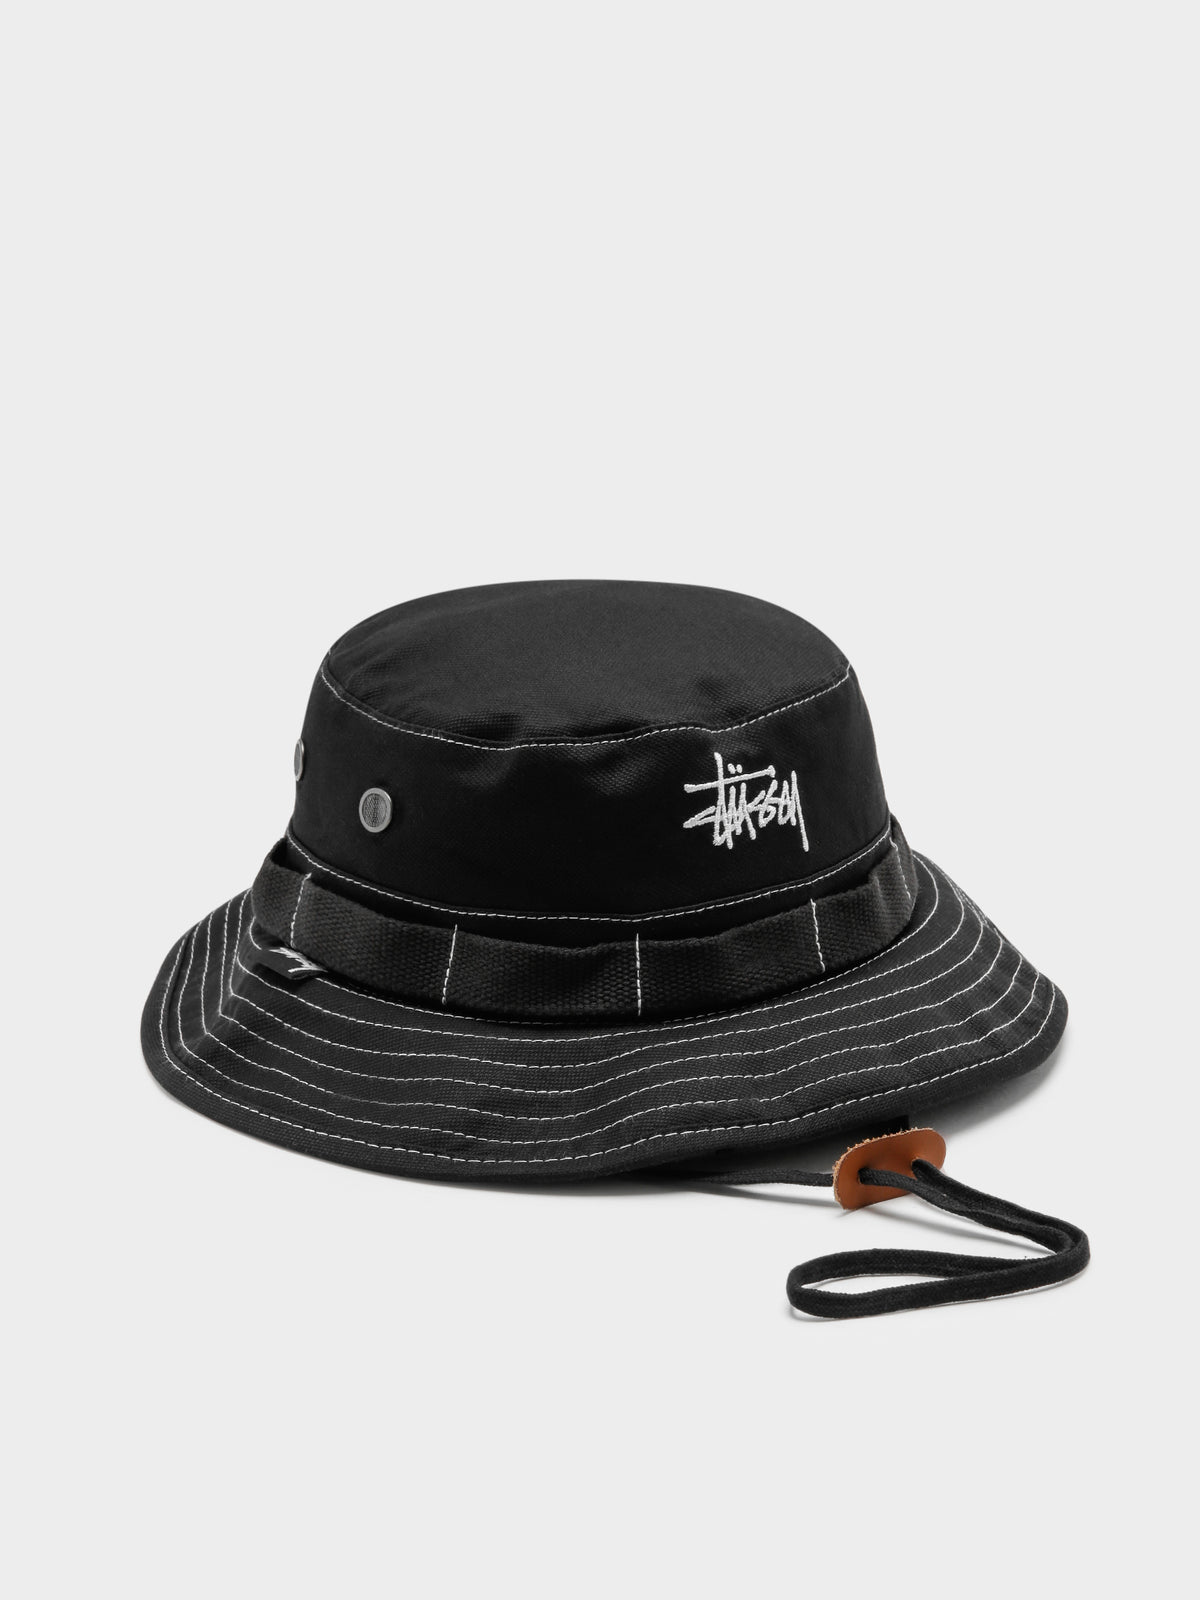 Contrast Topstitch Boonie Hat in Black